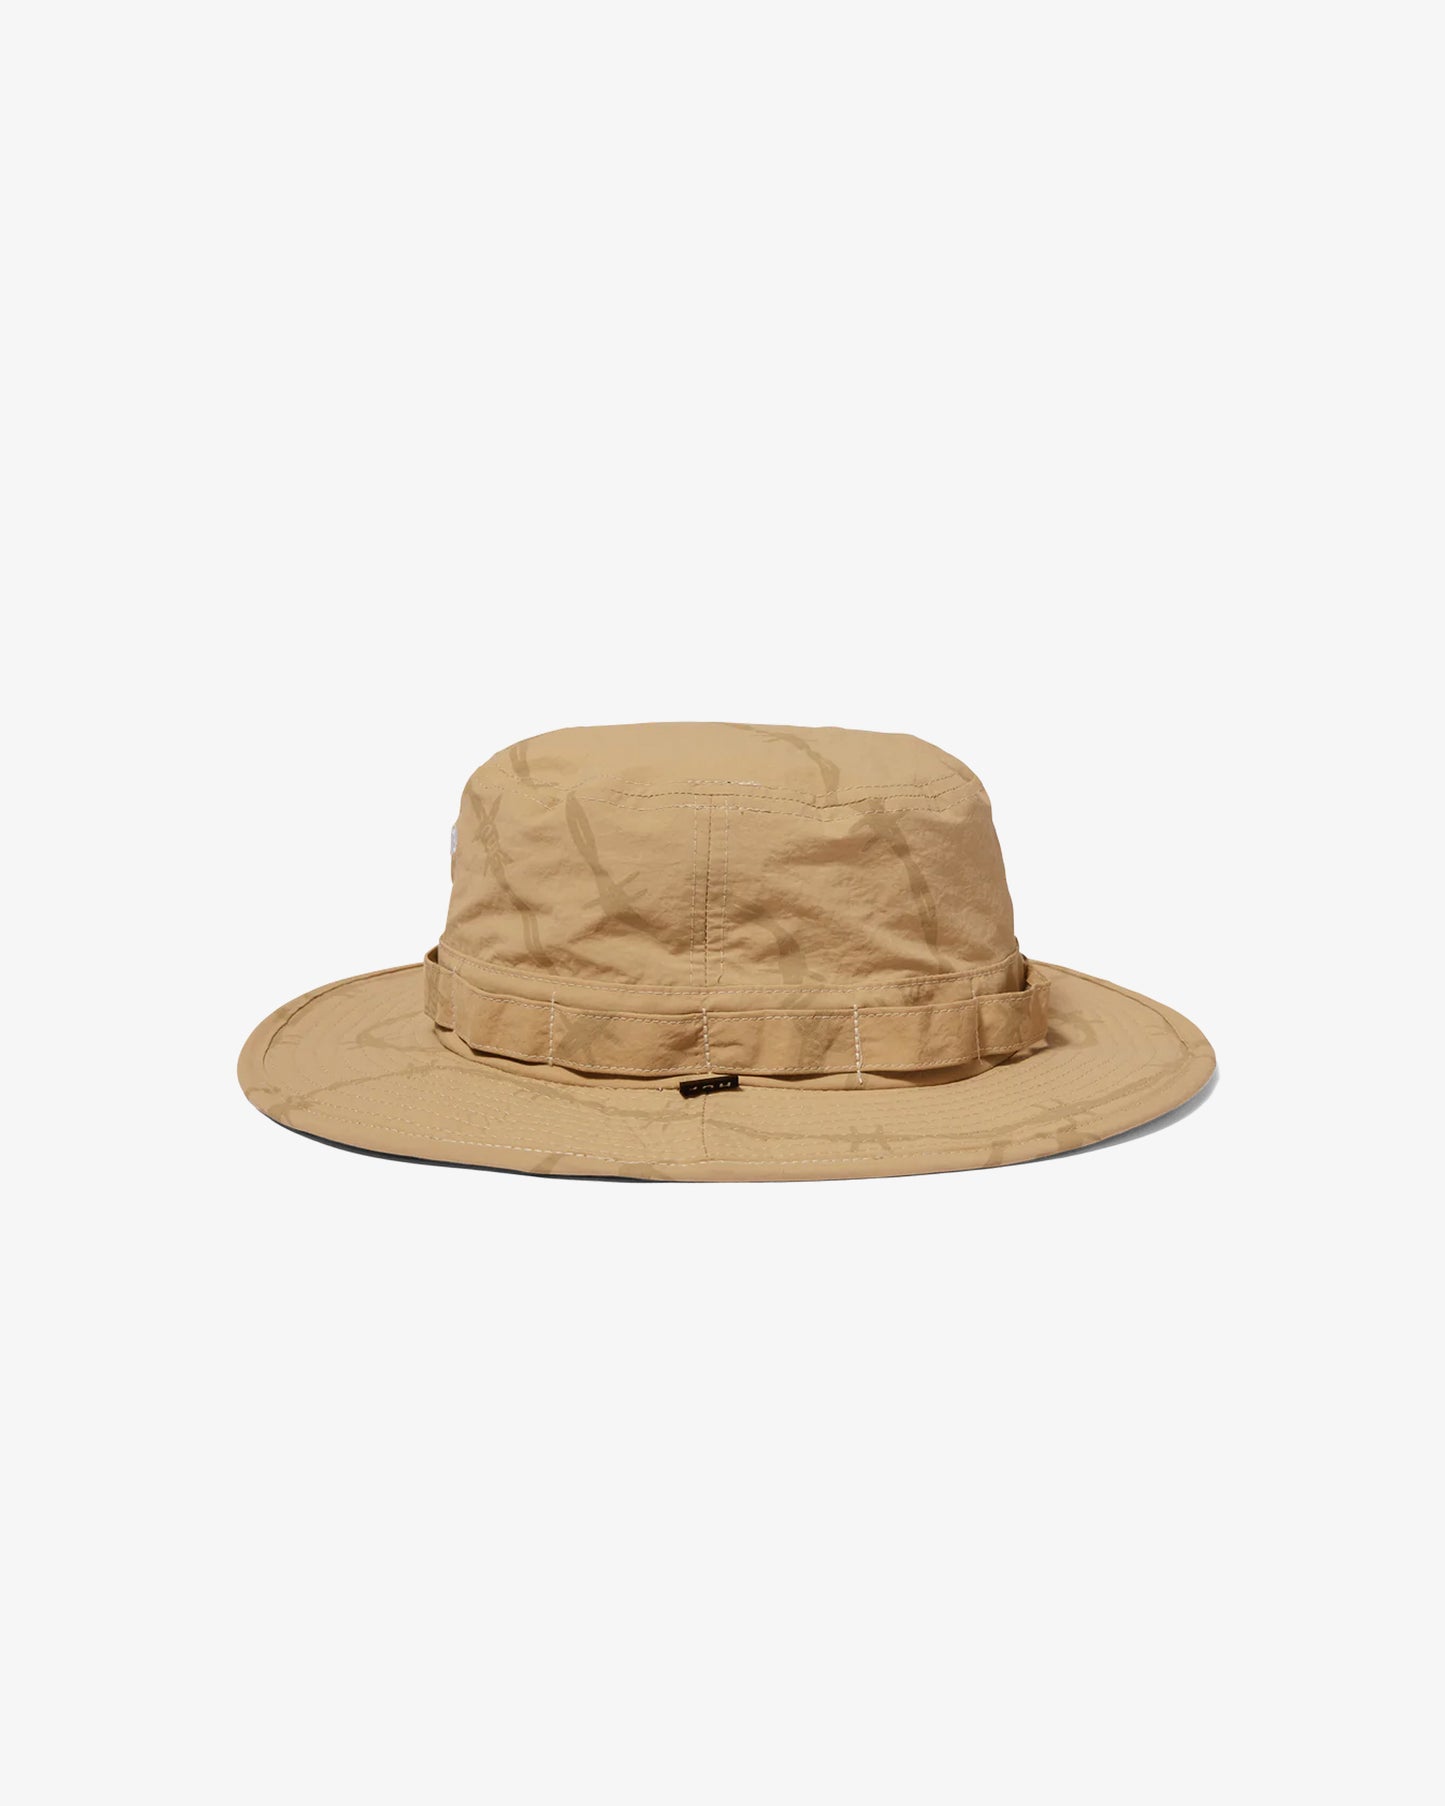 HUF Reservoir Boonie Hat